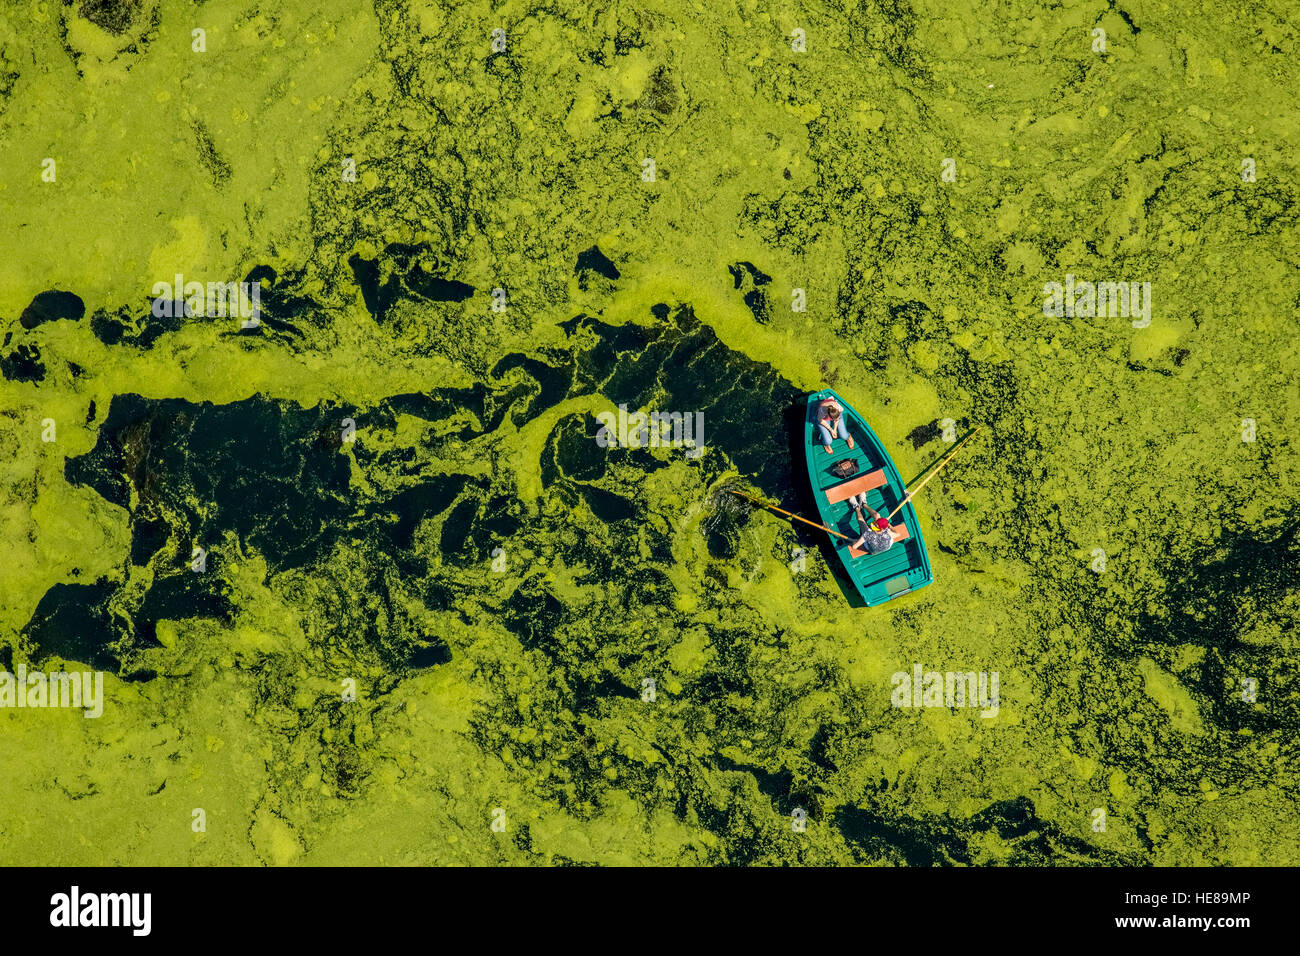 Vue aérienne de la chaloupe voyager dans l'herbe, de l'eau réservoir Kemnader, Witten, Ruhr, Rhénanie du Nord-Westphalie, Allemagne Banque D'Images